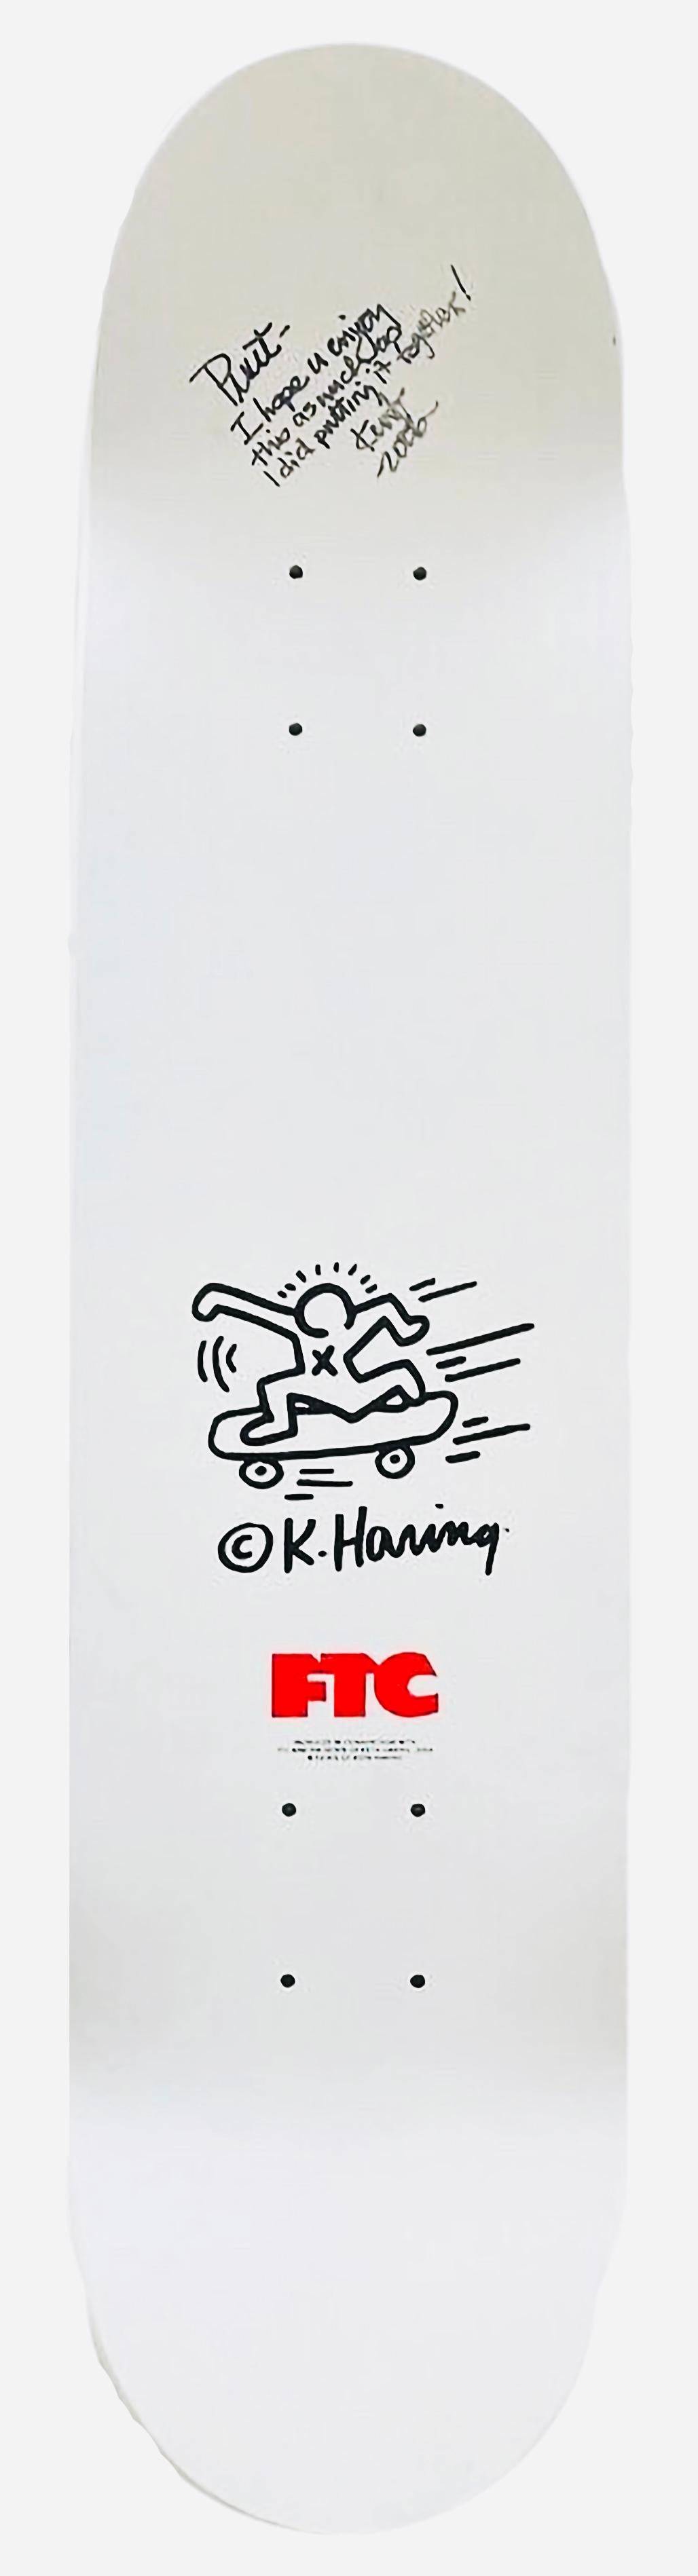 RARE vintage Keith Haring Skateboard Deck 2004 :

Cette planche de skateboard Keith Haring intemporelle et en édition limitée a été publiée en 2004 grâce à la collaboration entre la légendaire société de skateboard de San Francisco FTC et la